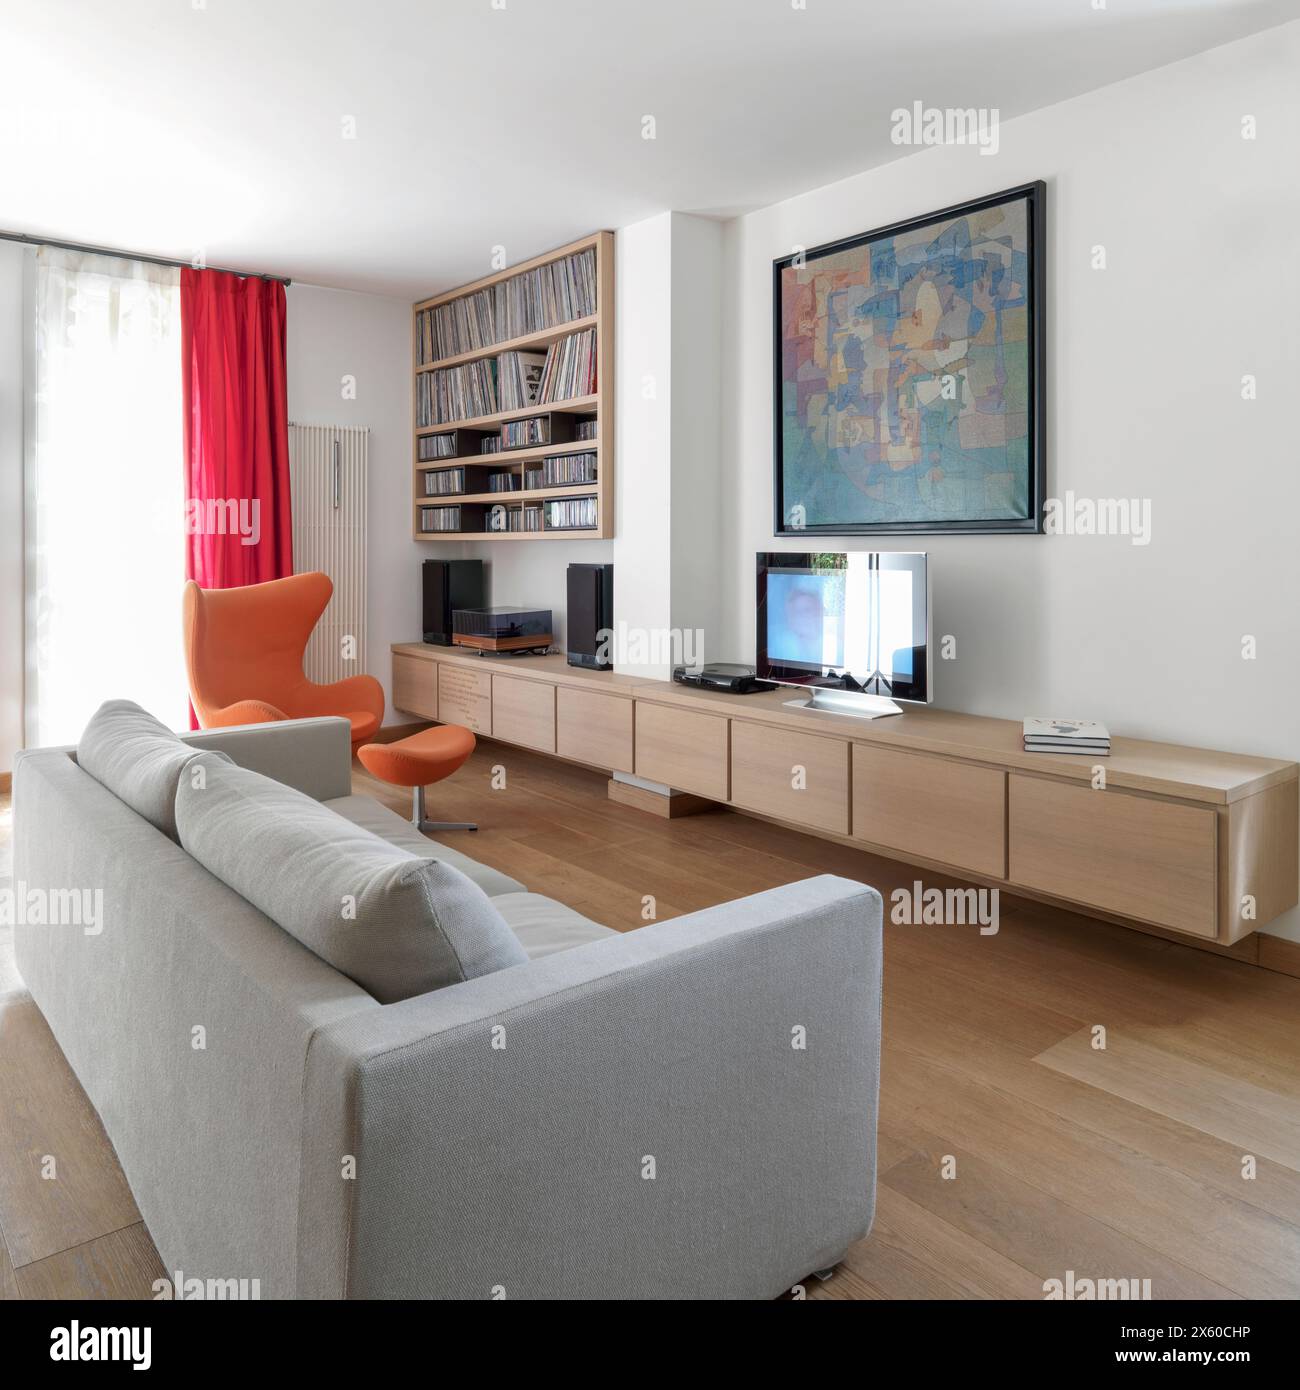 Immagine interna di un moderno soggiorno con divano in tessuto e mobili in legno in primo piano, poltrone e libreria sullo sfondo Foto Stock